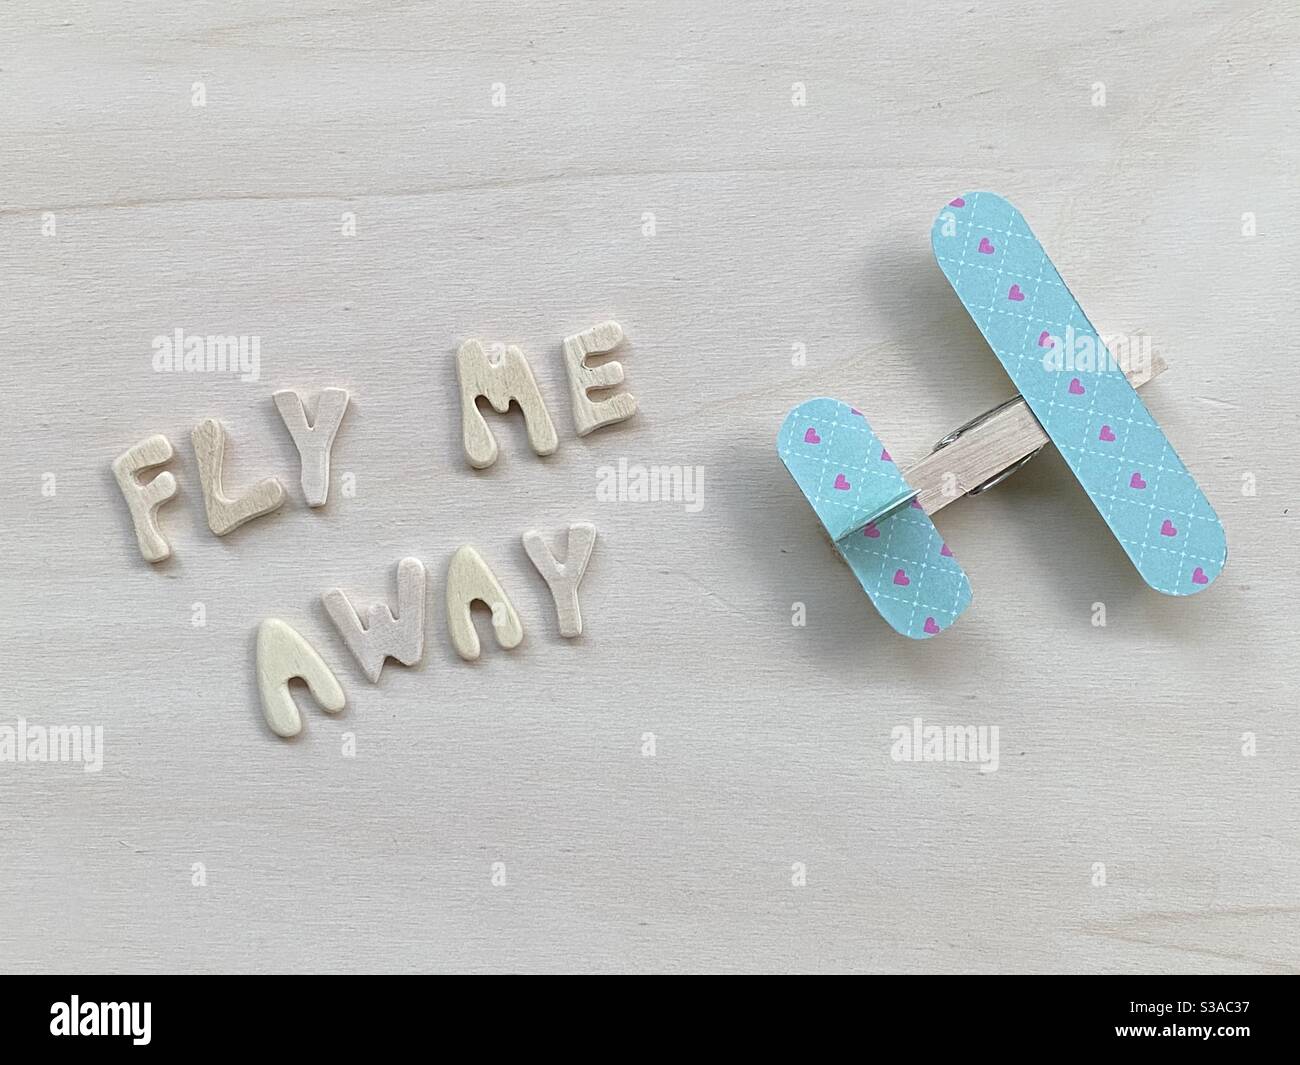 Fly me away, testo creativo composto da lettere in legno e un velivolo in legno clothespin Foto Stock